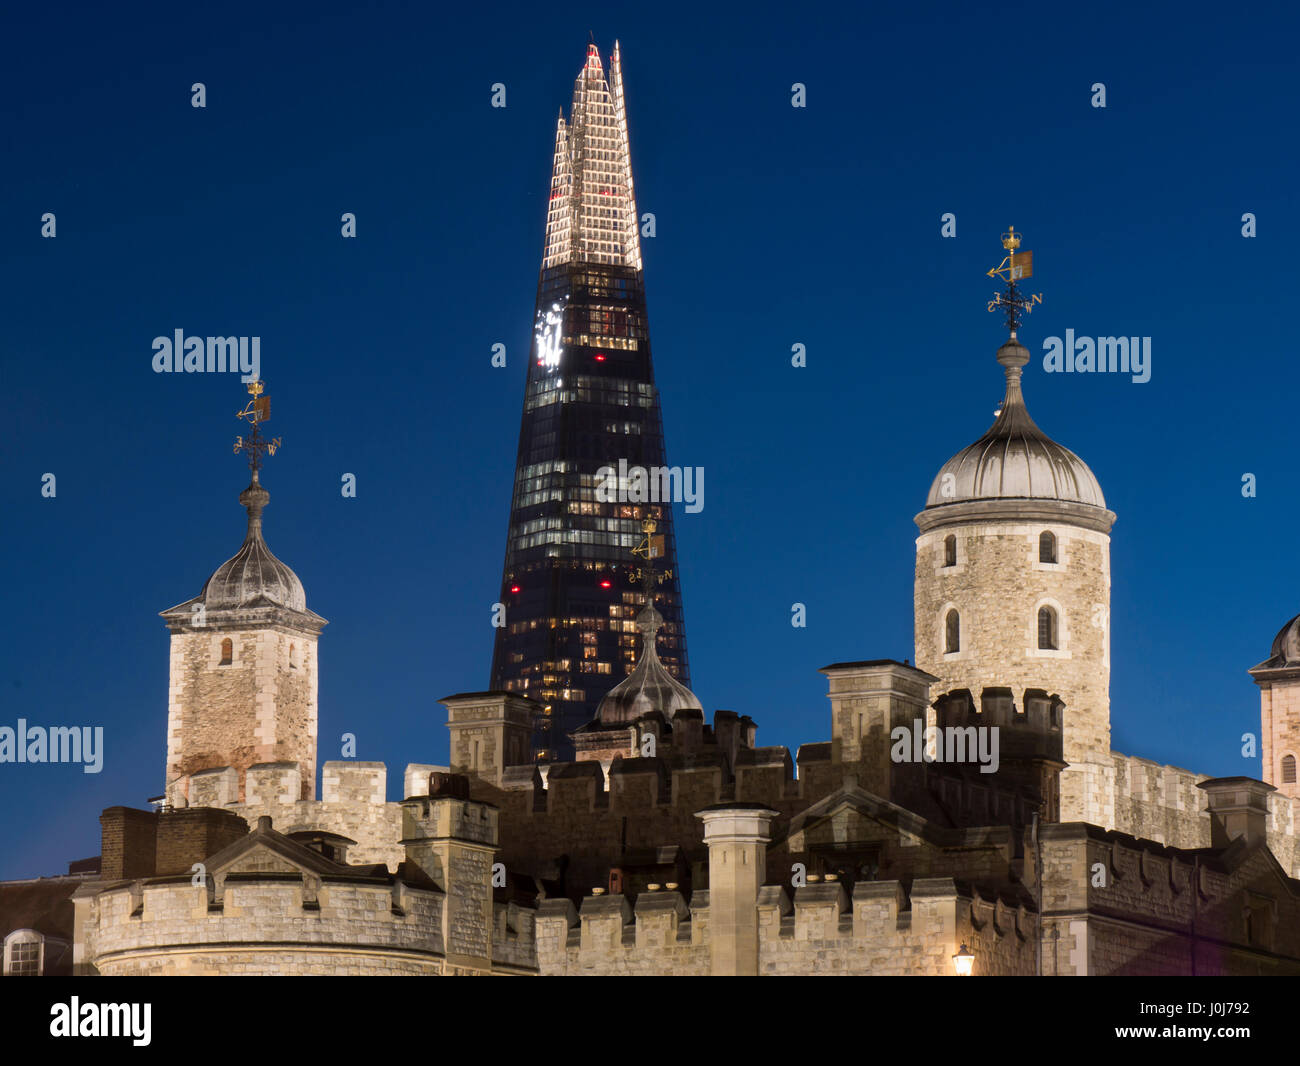 Europe, UK, England, London, Tower of London, Shard dusk Stock Photo